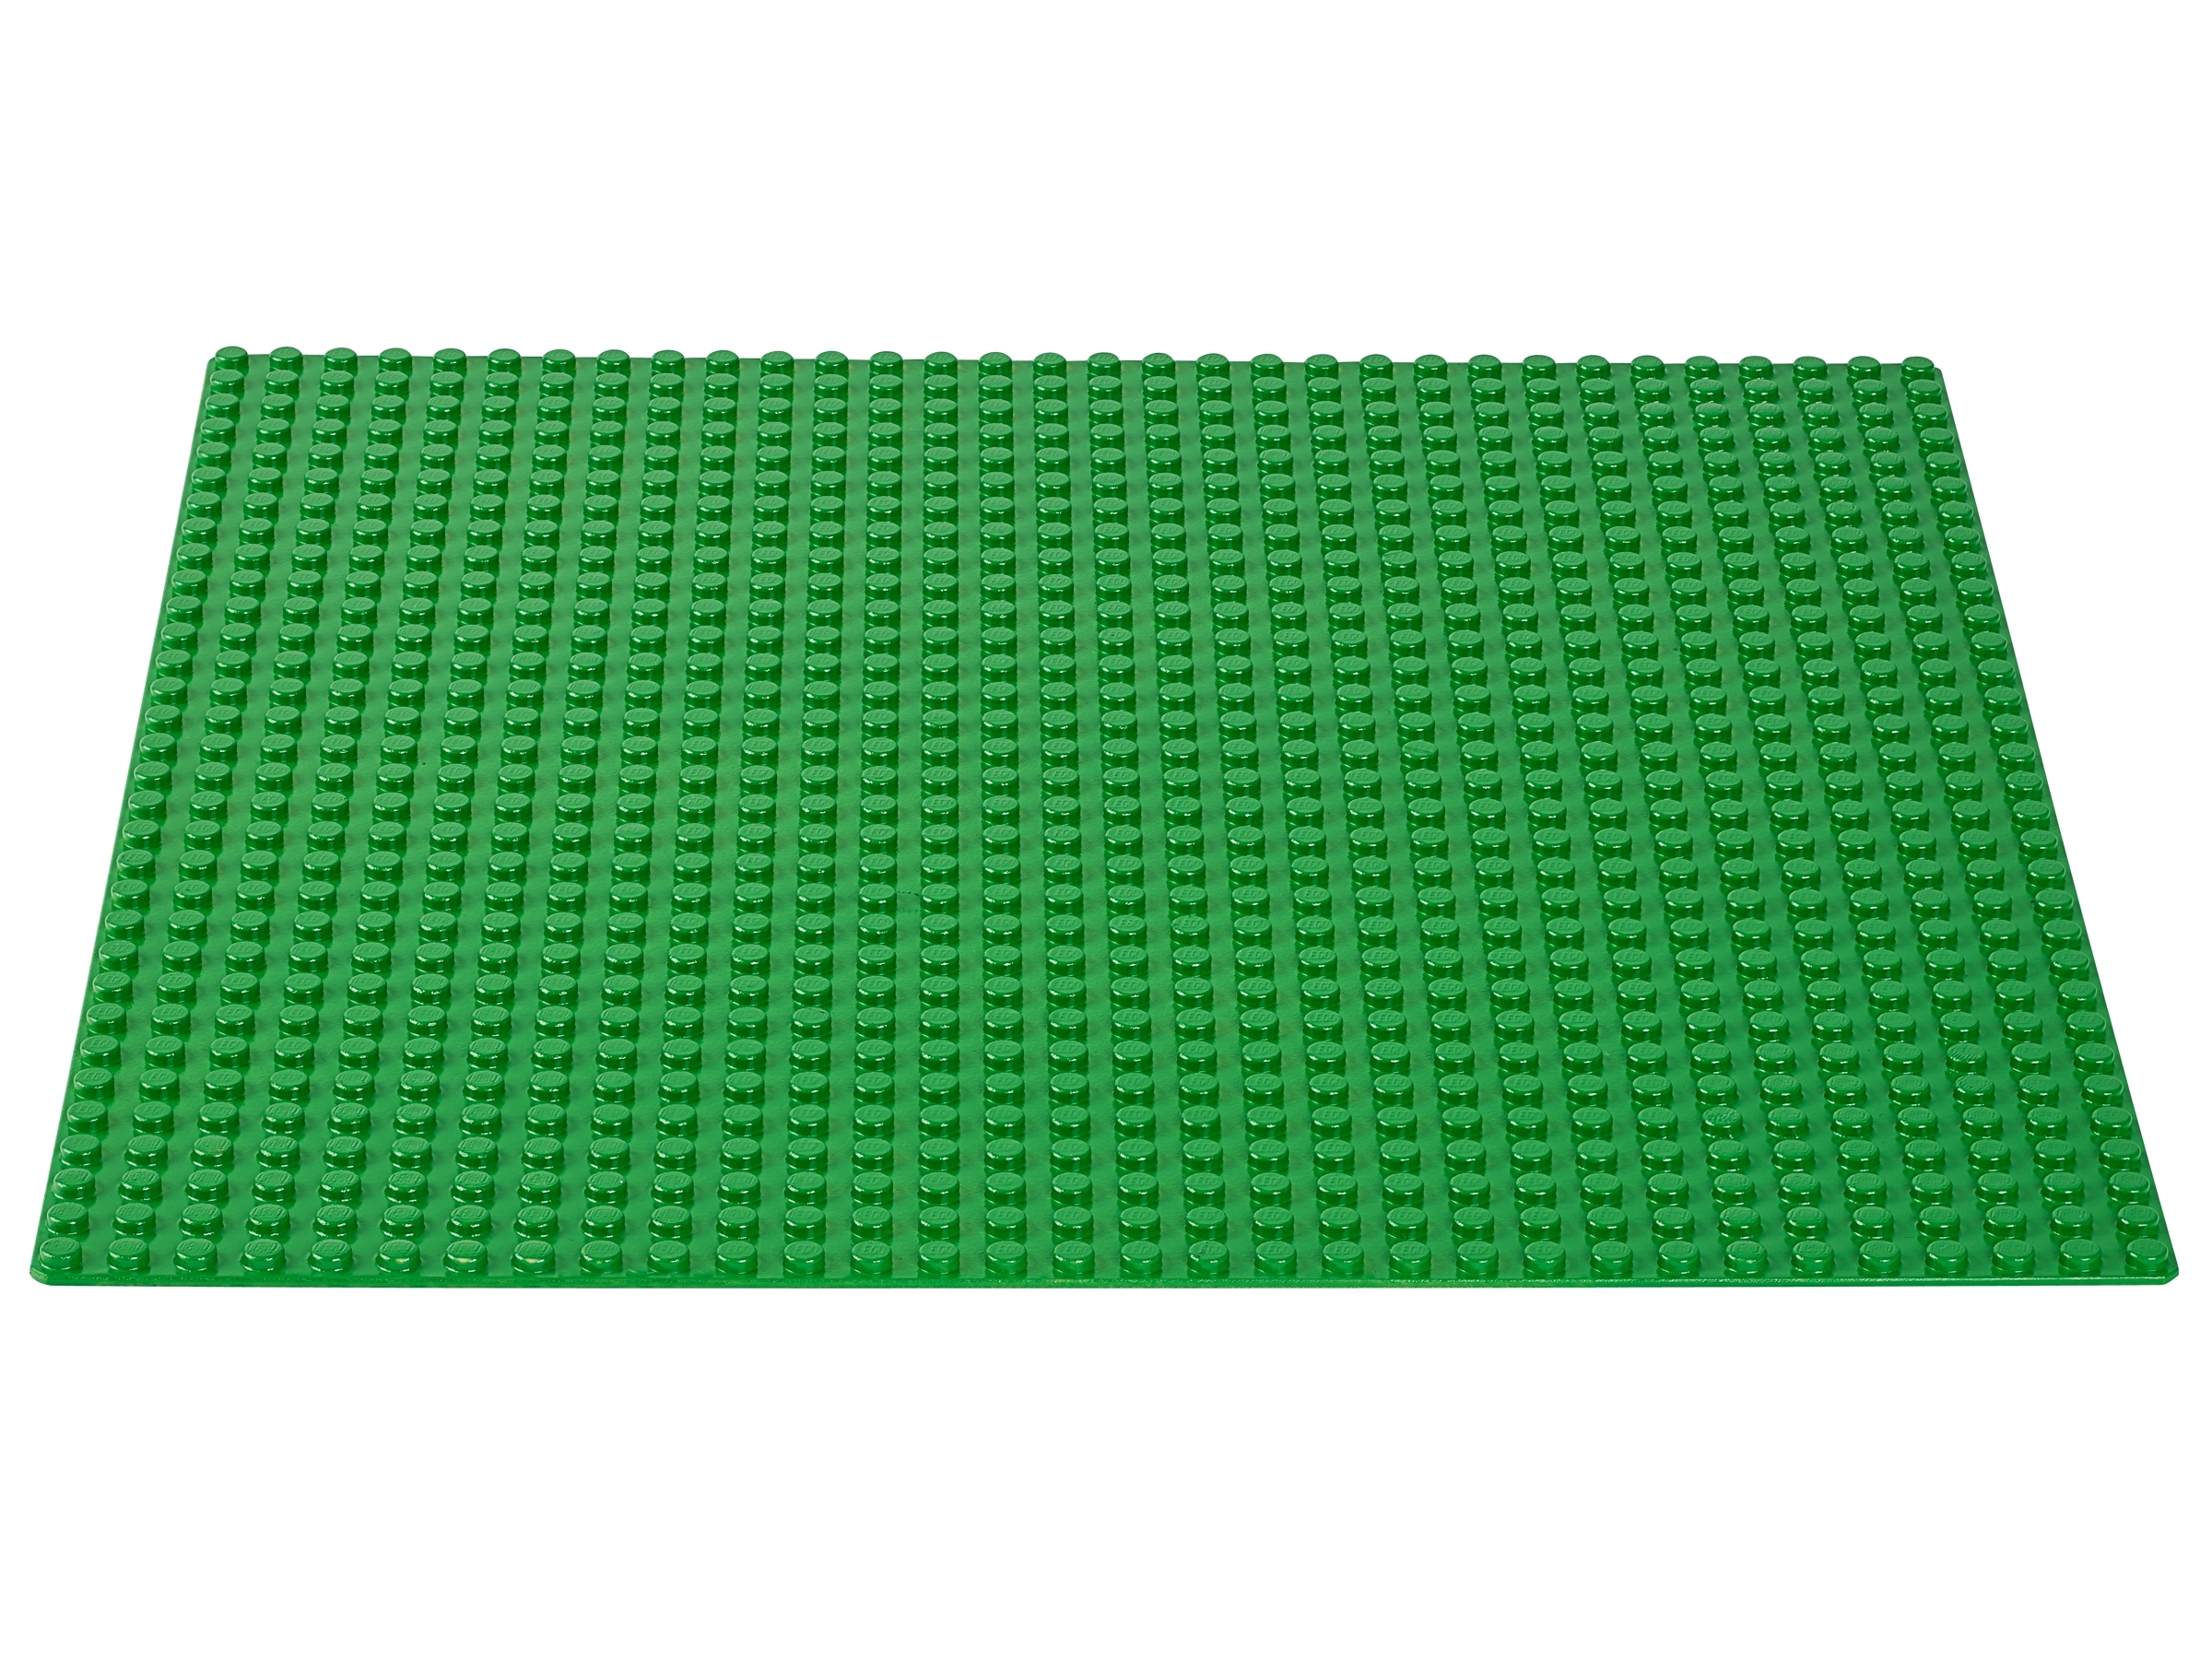 Lego® Classic Grundplatte 3865 8x16 Baseplate Platte grün dunkel grün green